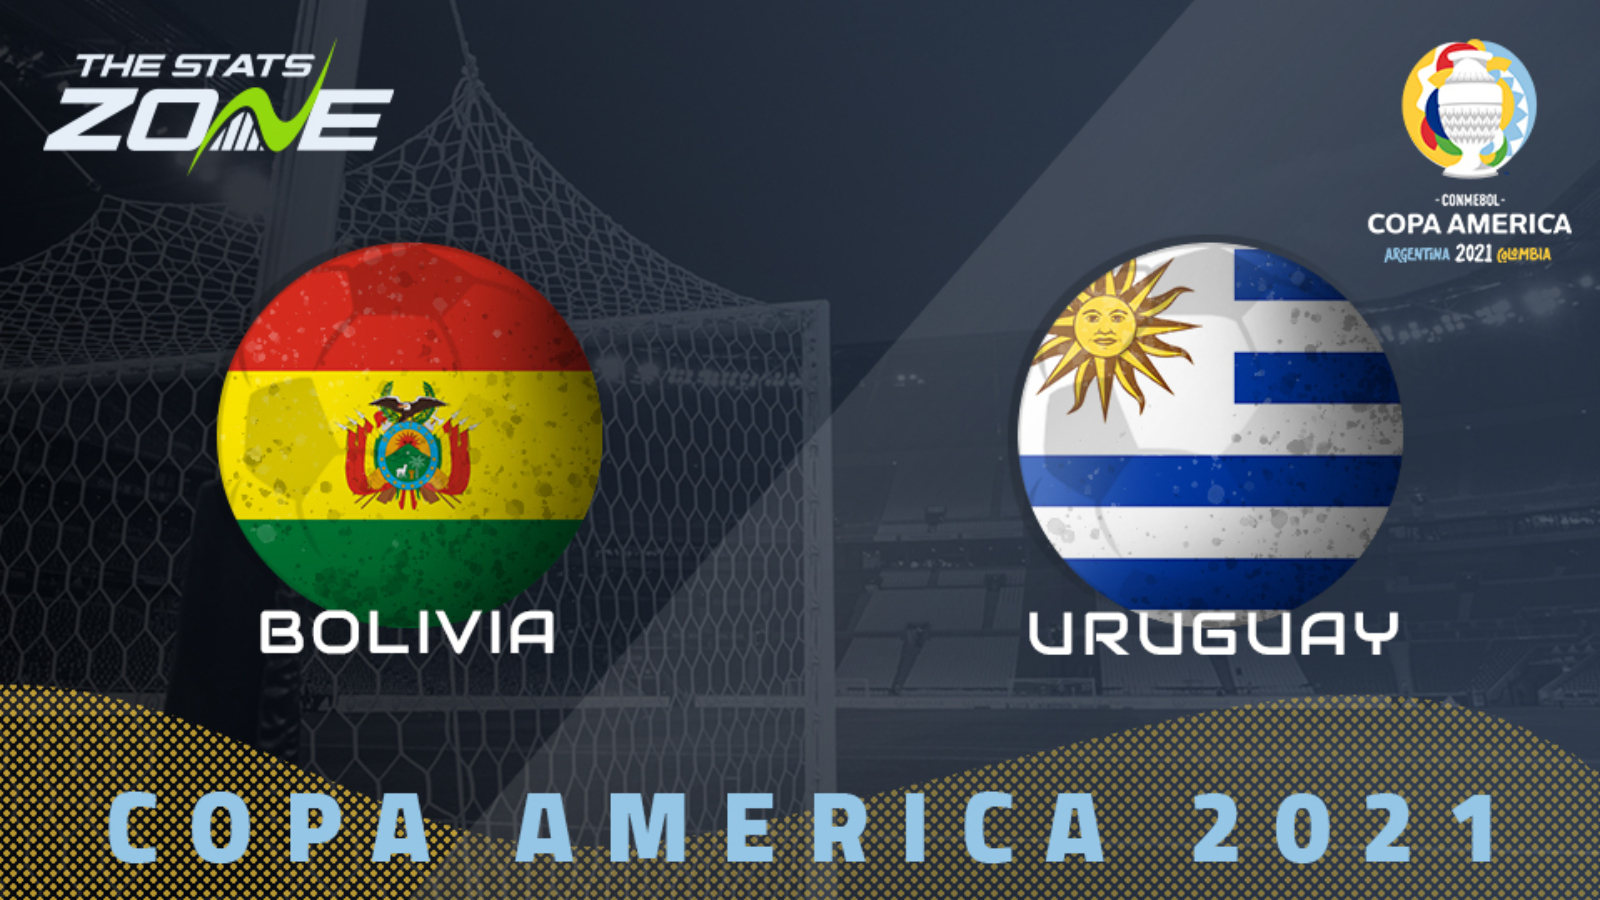 Vs uruguay bolivia Uruguay vs